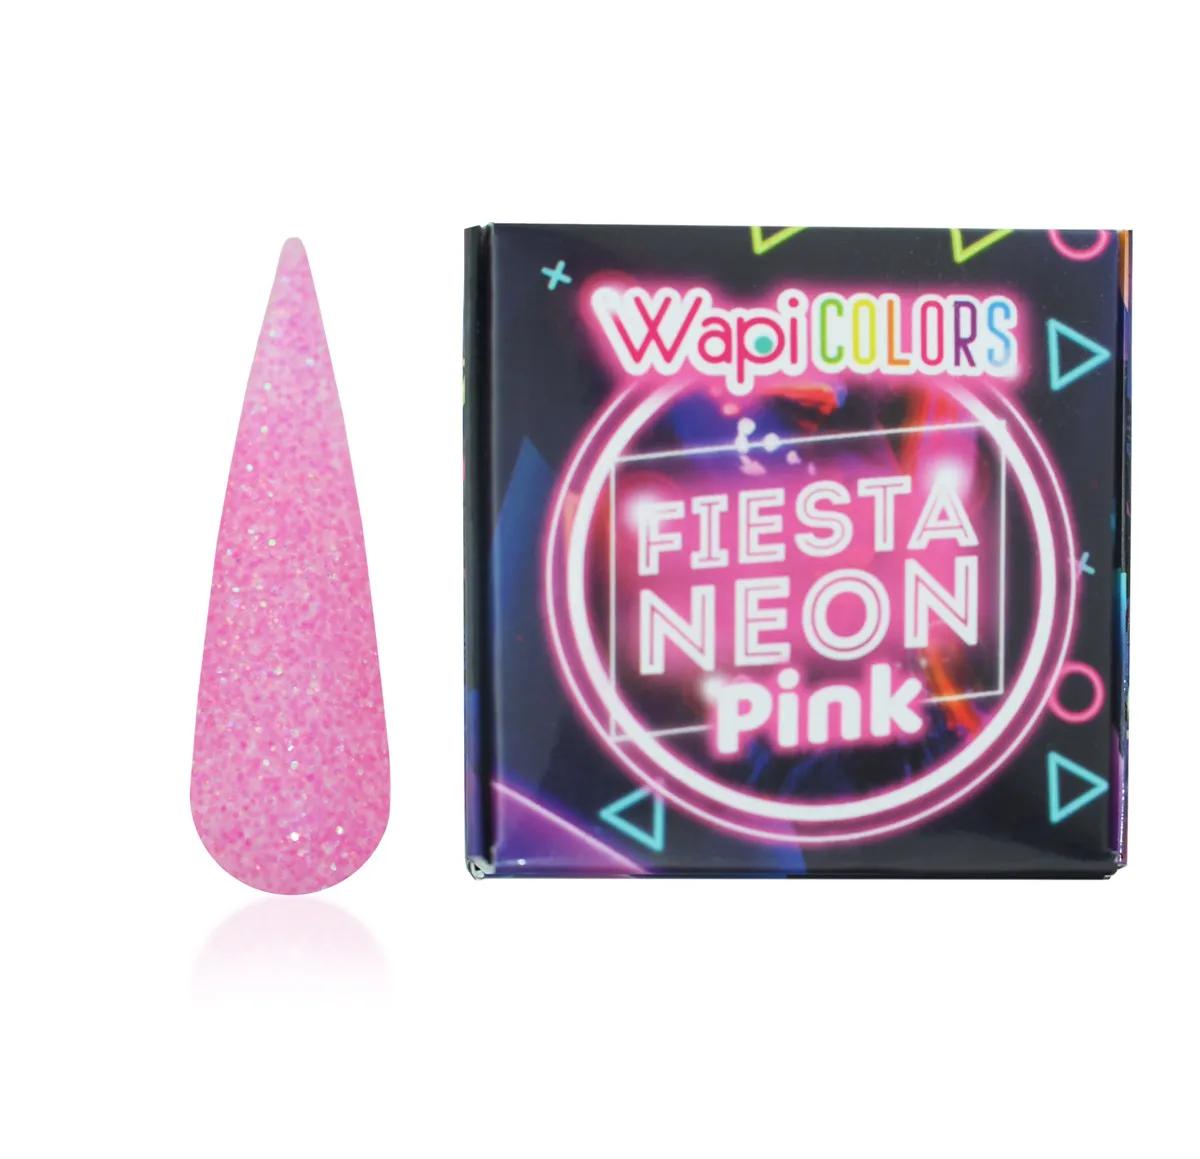 W.Wapicolors Fiesta Neon Pink Neon